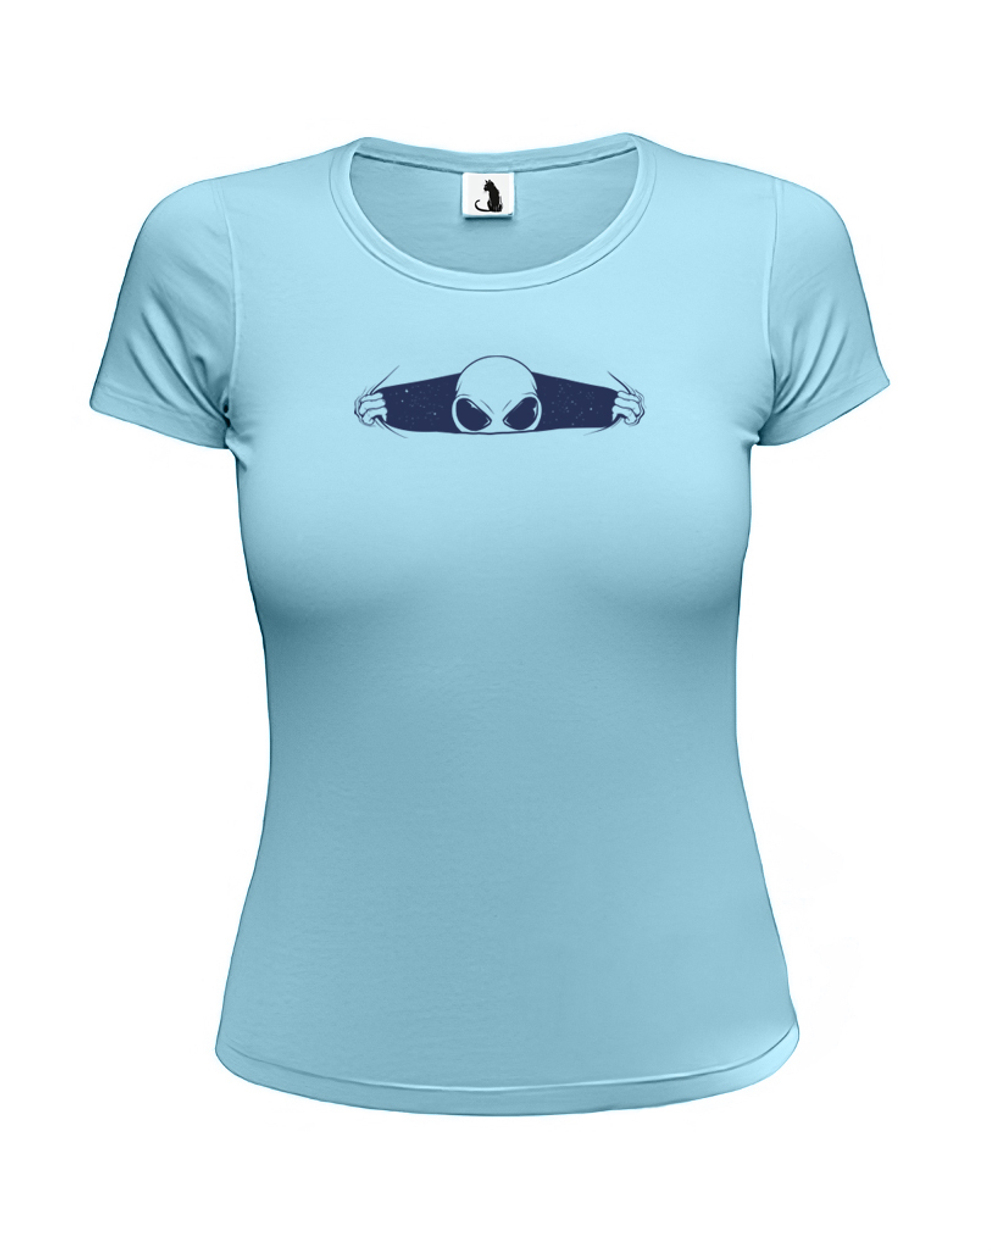 Футболка с инопланетянином женская приталенная голубая с синим рисунком